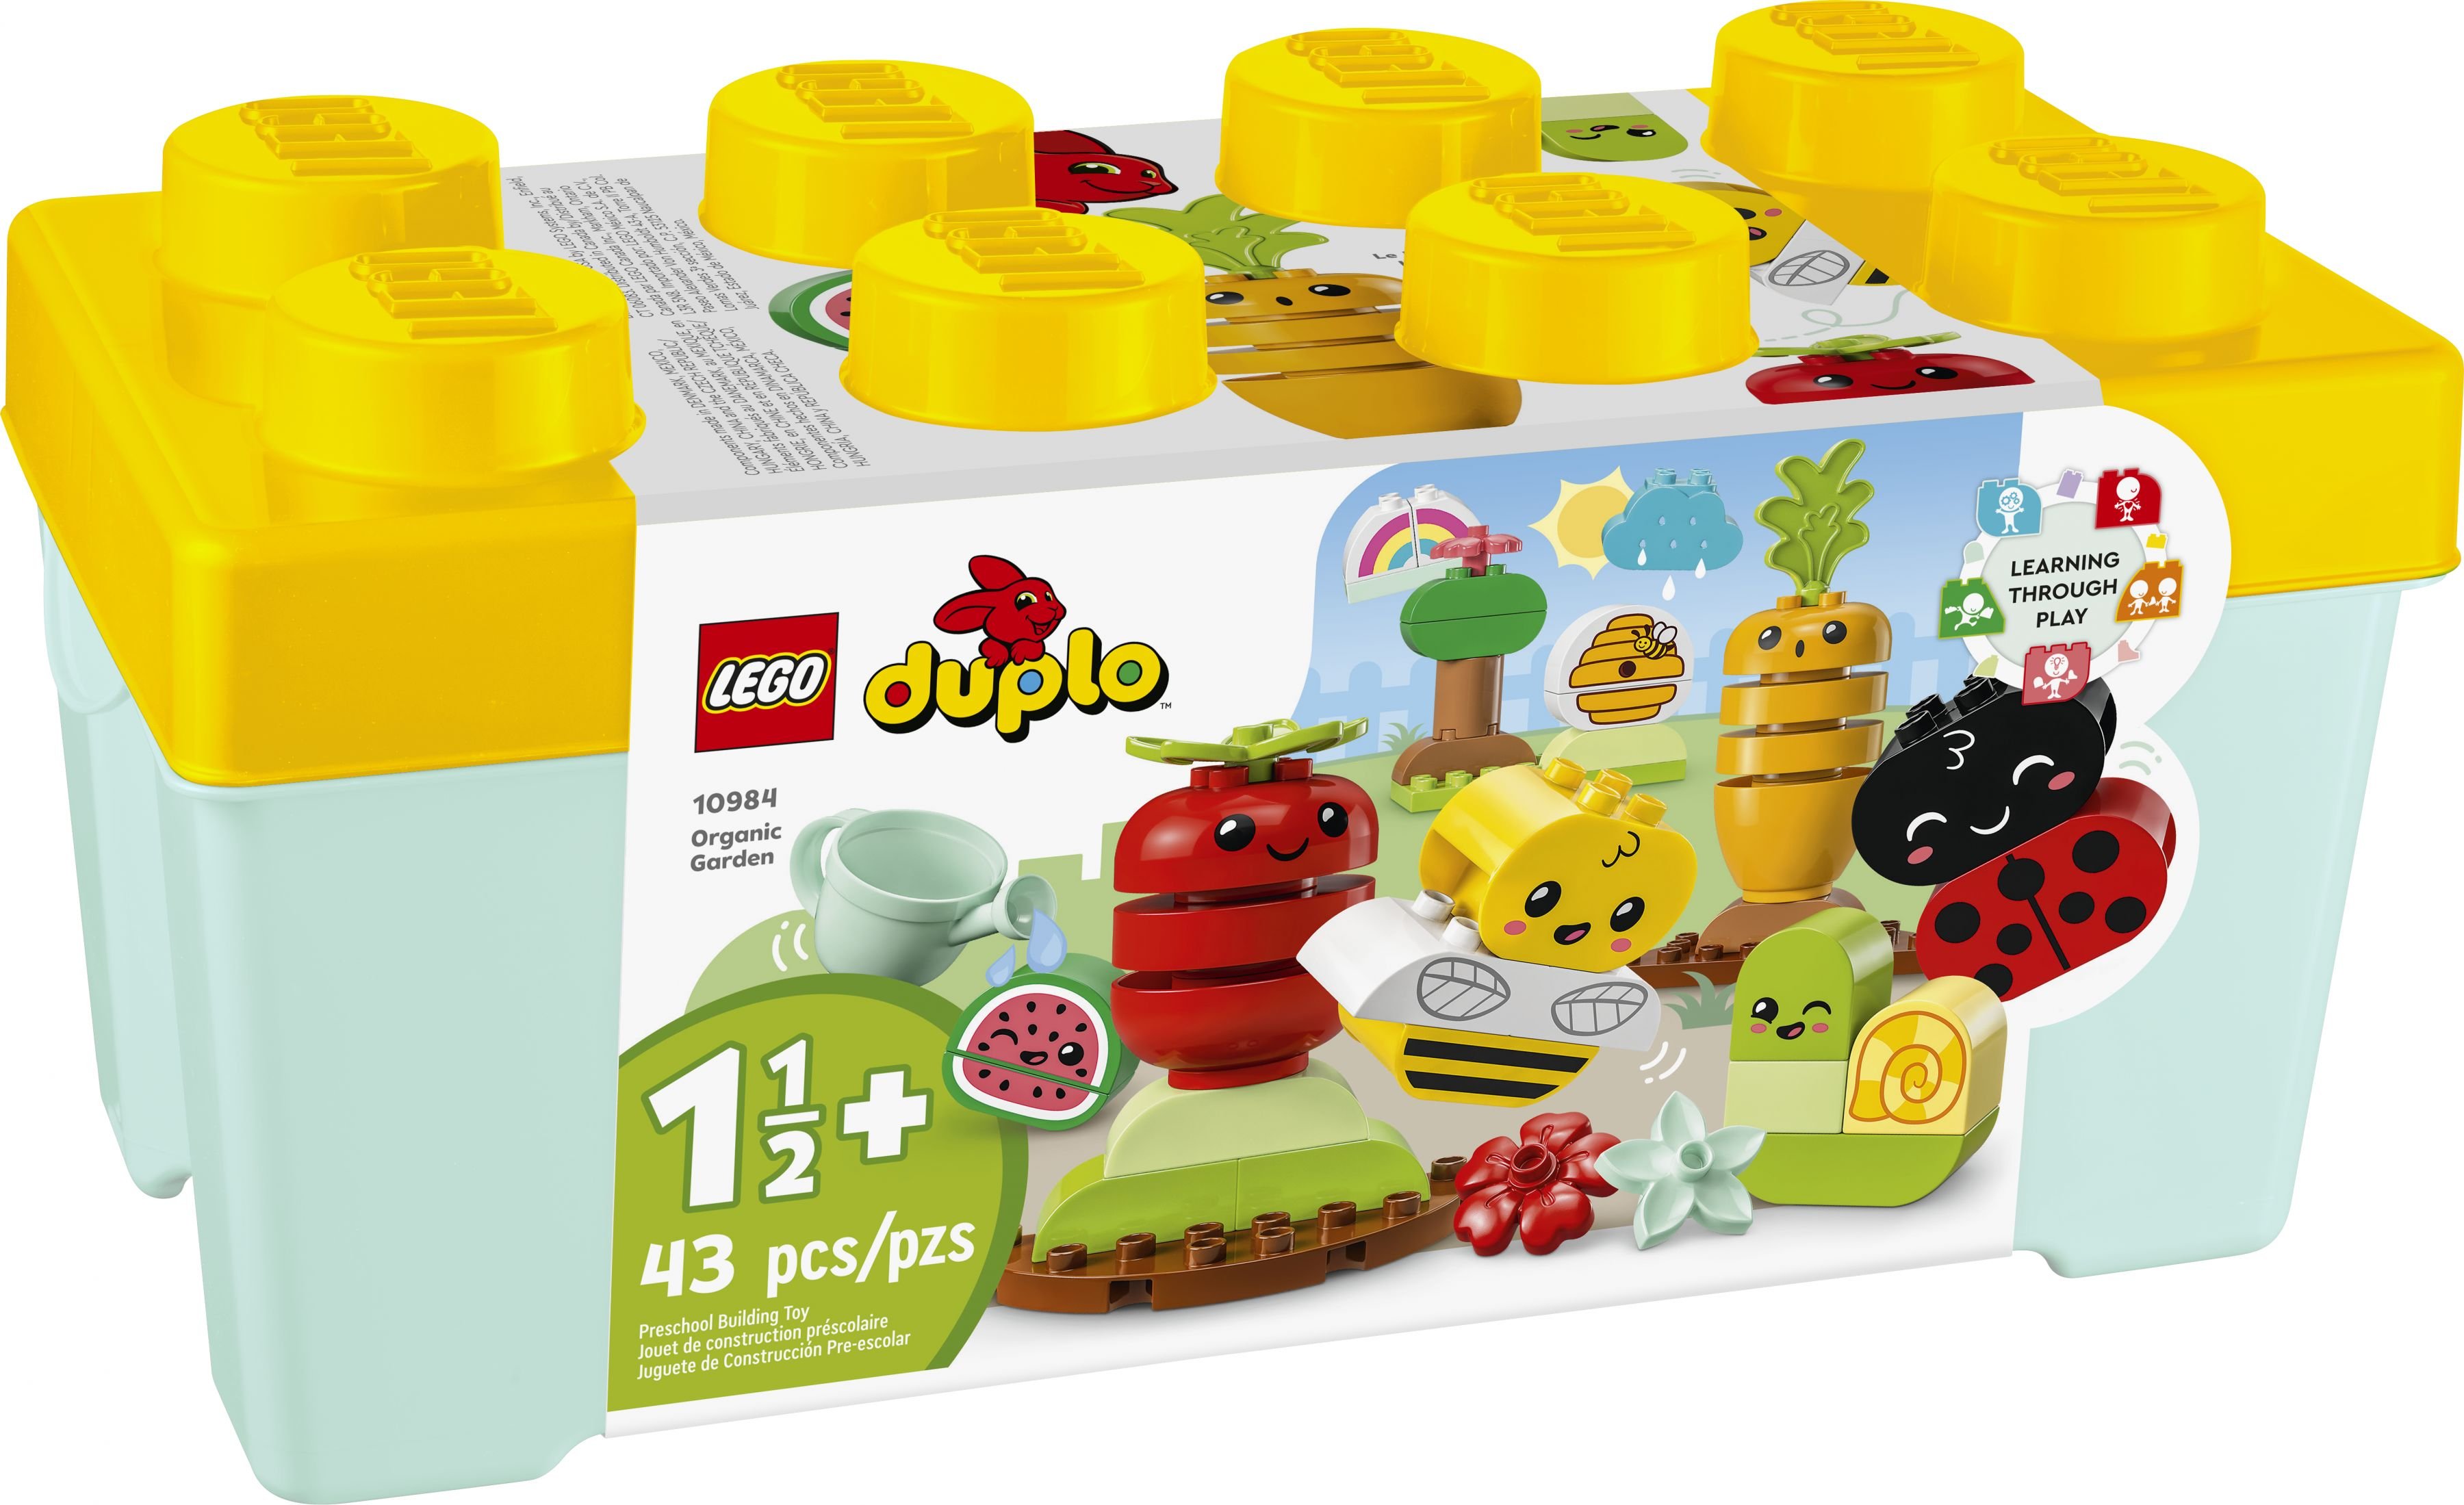 LEGO Duplo 10984 Biogarten LEGO_10984_Box1_v39.jpg